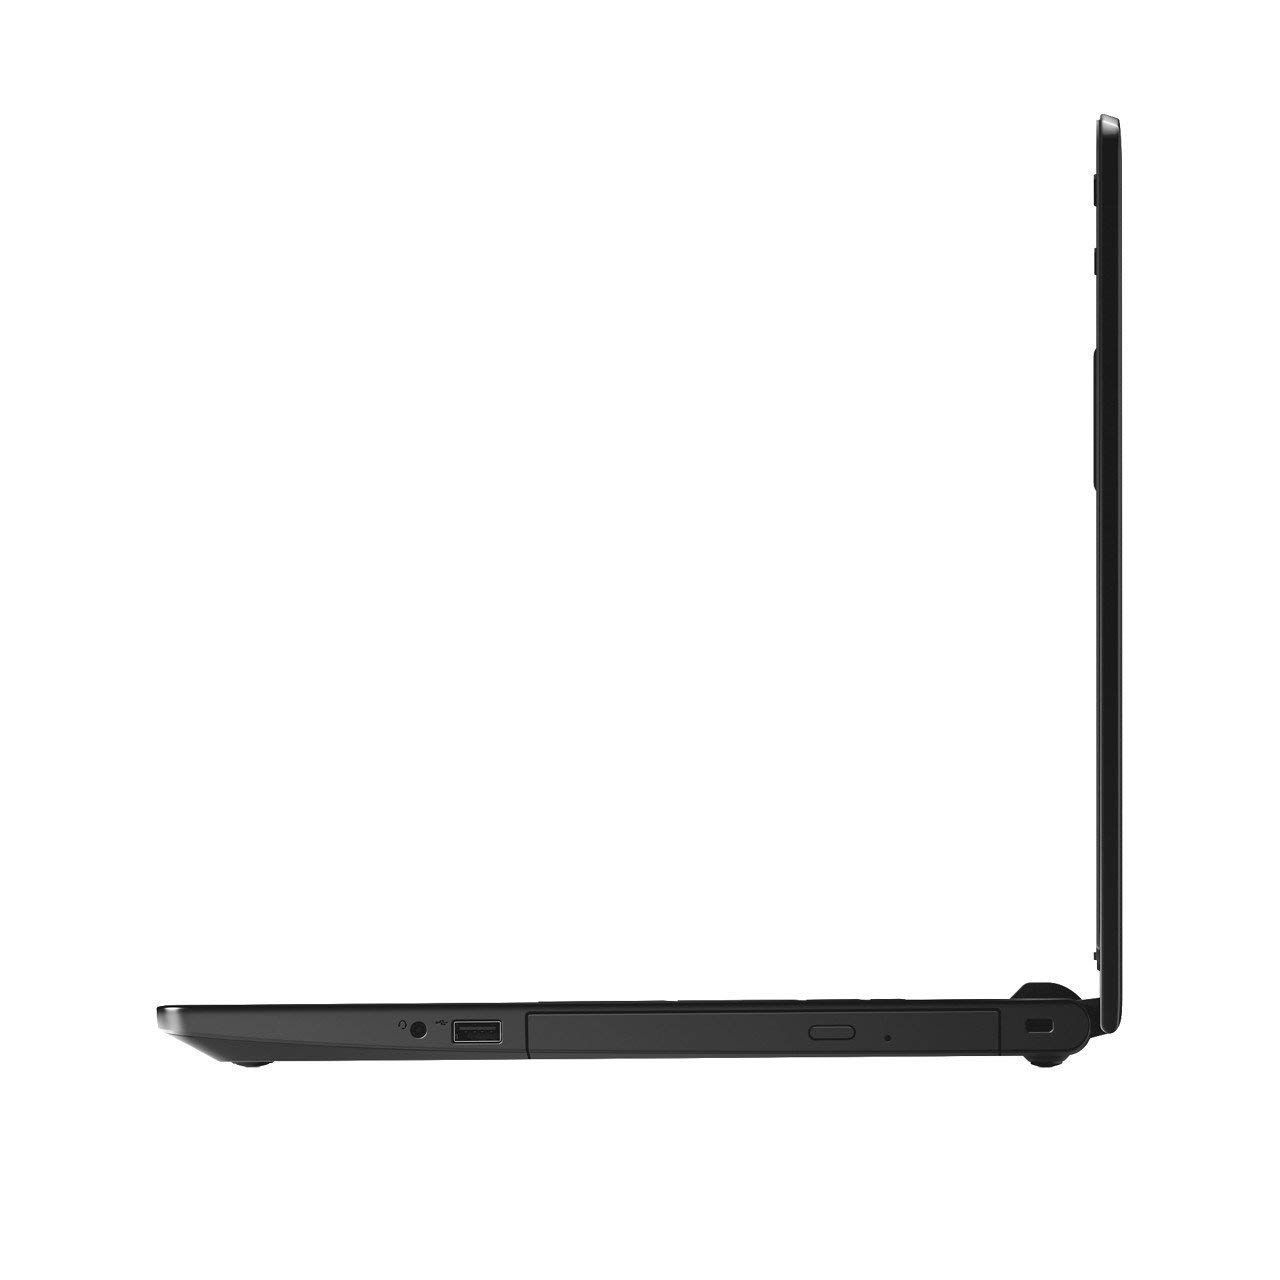 Dell Vostro 3578(i5 8th Gen/8GB/1TB/Win 10/2GB GFX) Laptop – Buy